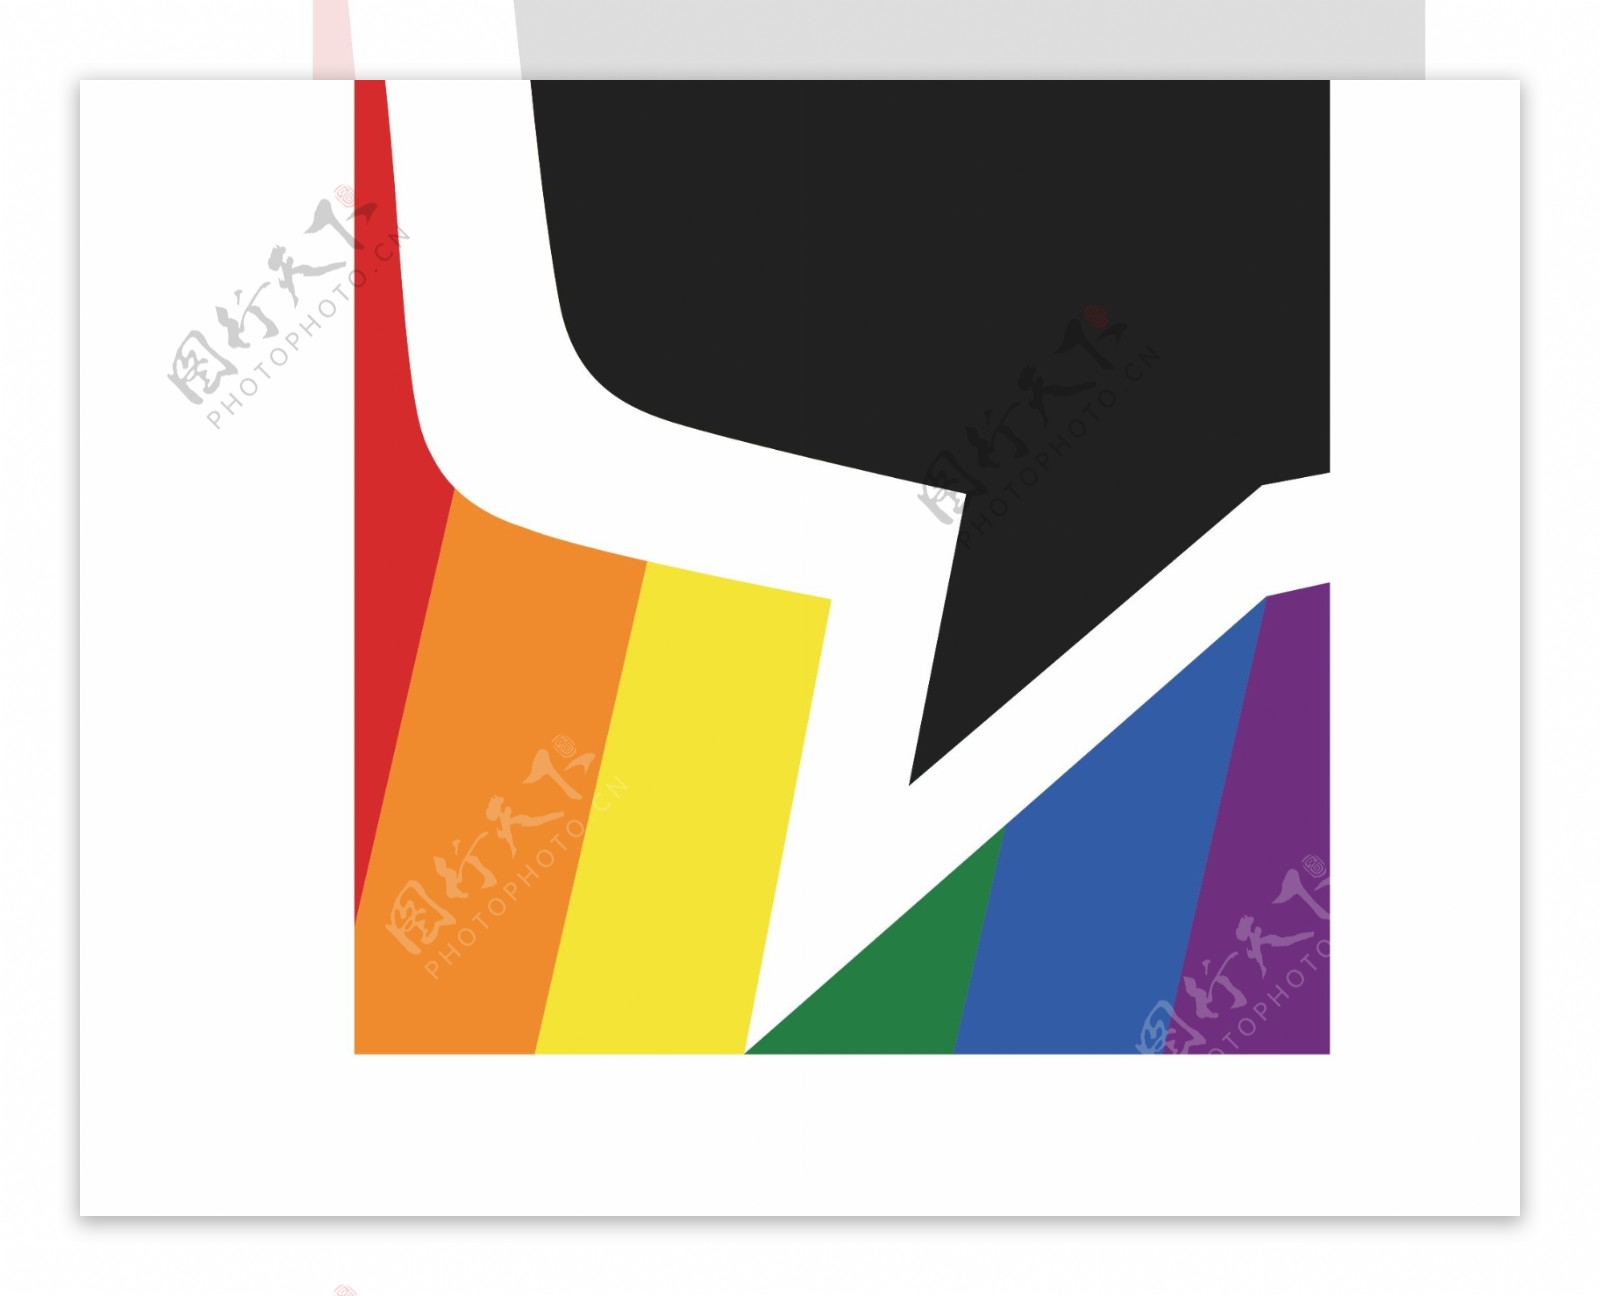 布鲁帝同志社交软件标志logo